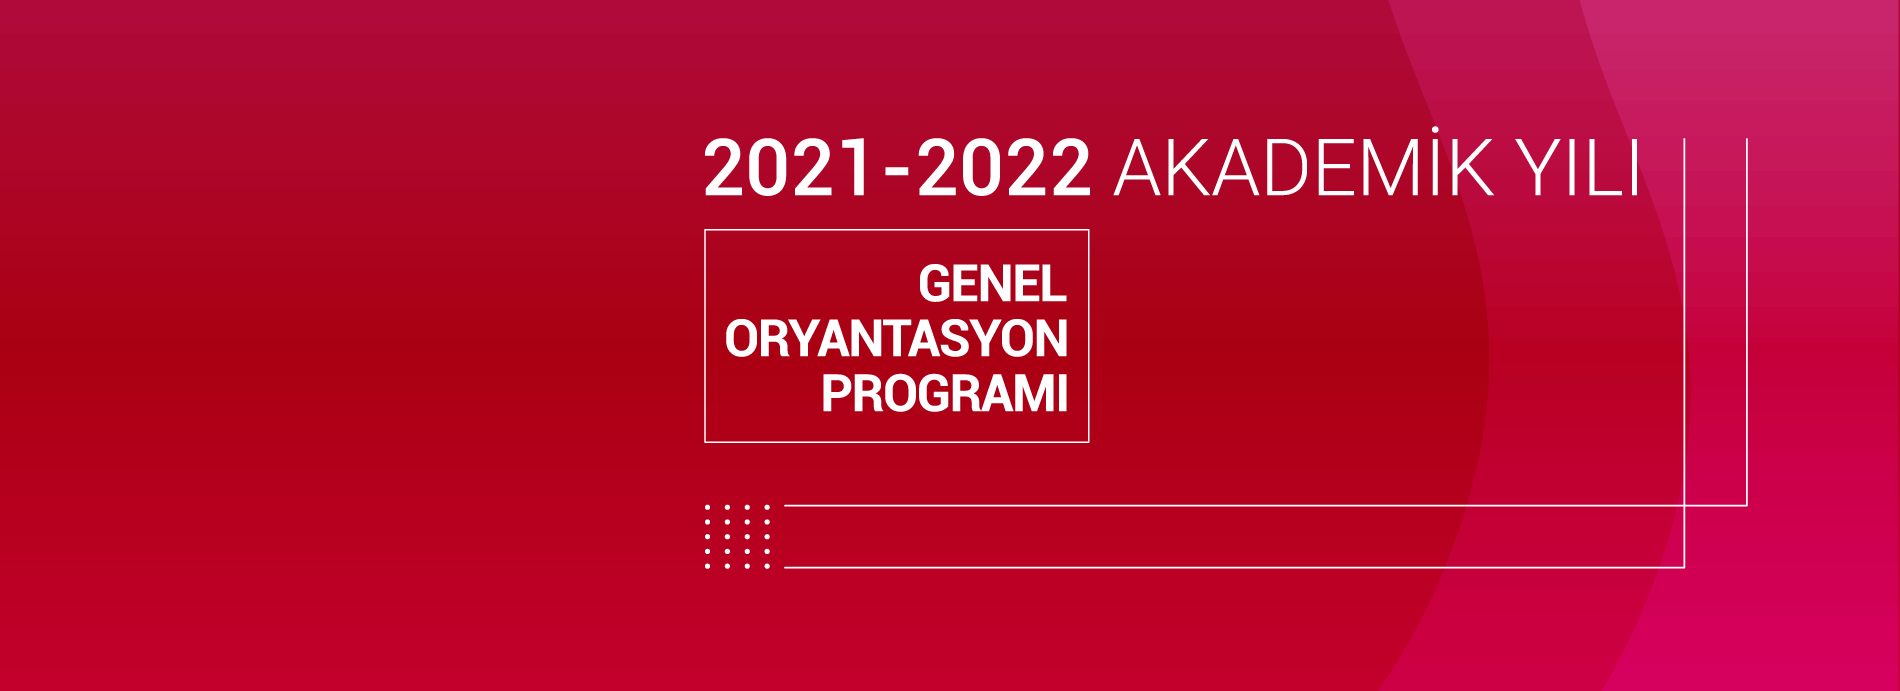 2021-2022 Akademik Yılı Oryantasyon Programı